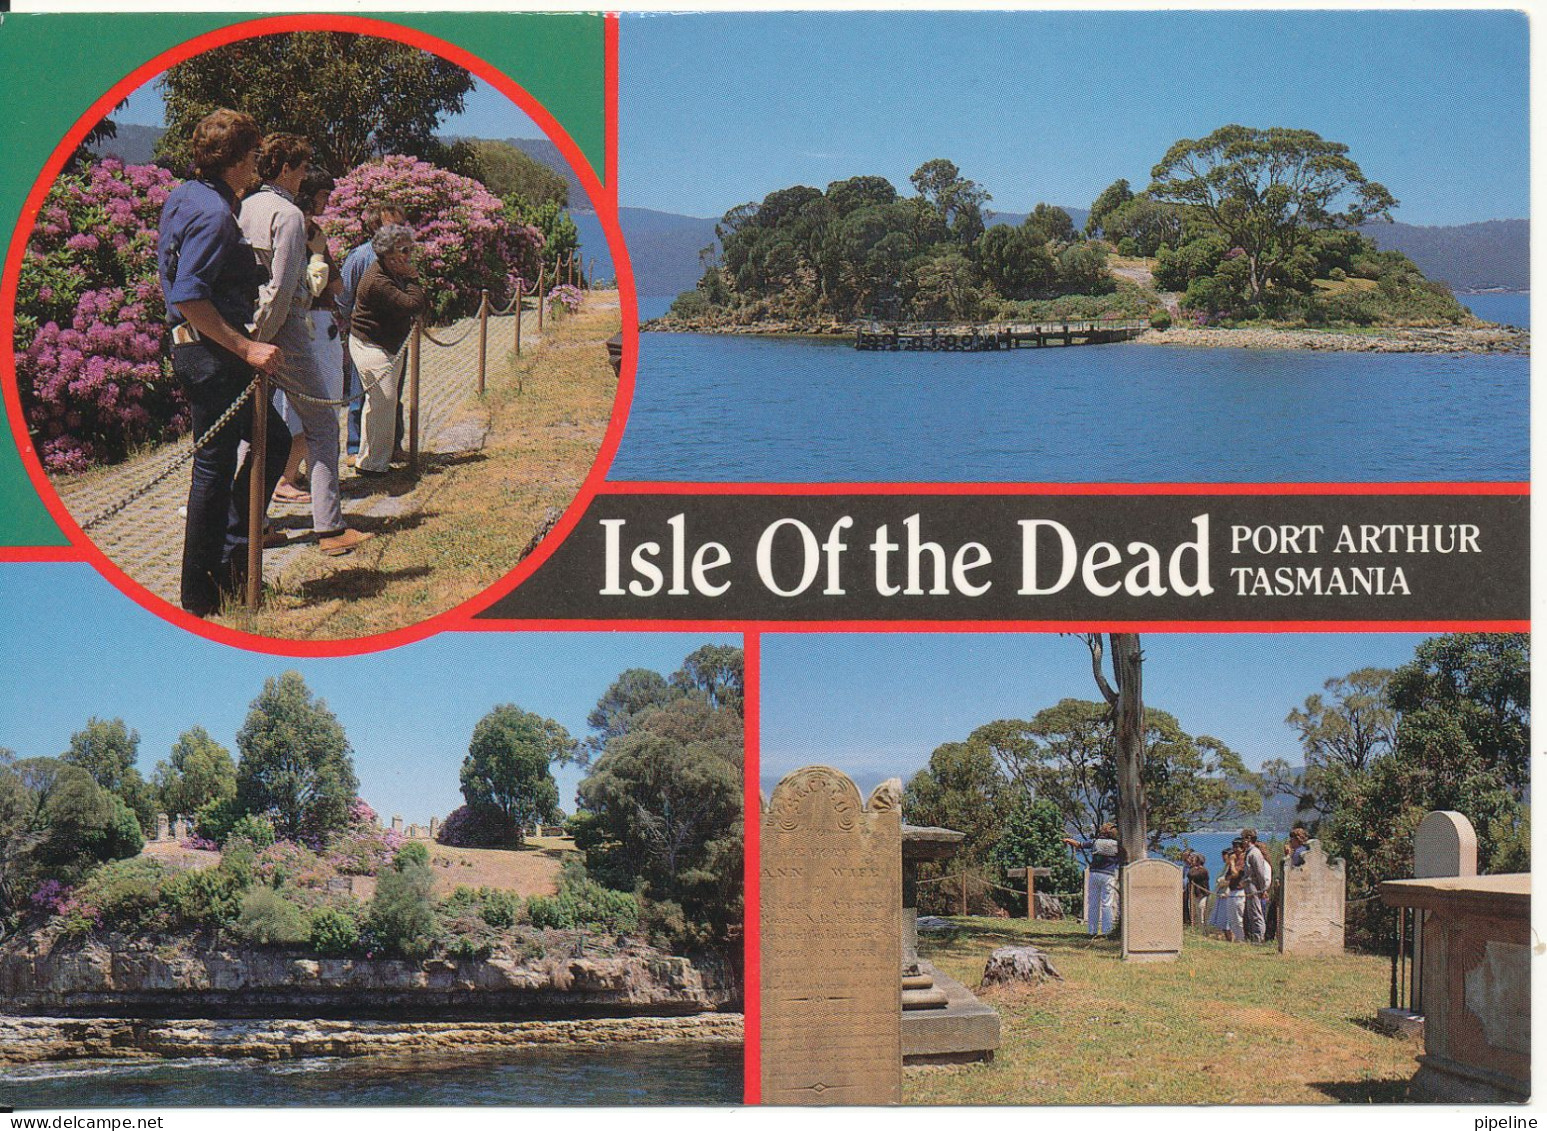 Australia Postcard Sent To Germany 12-8-1988 (Isle Of The Dead Port Arthur Tasmania) - Port Arthur